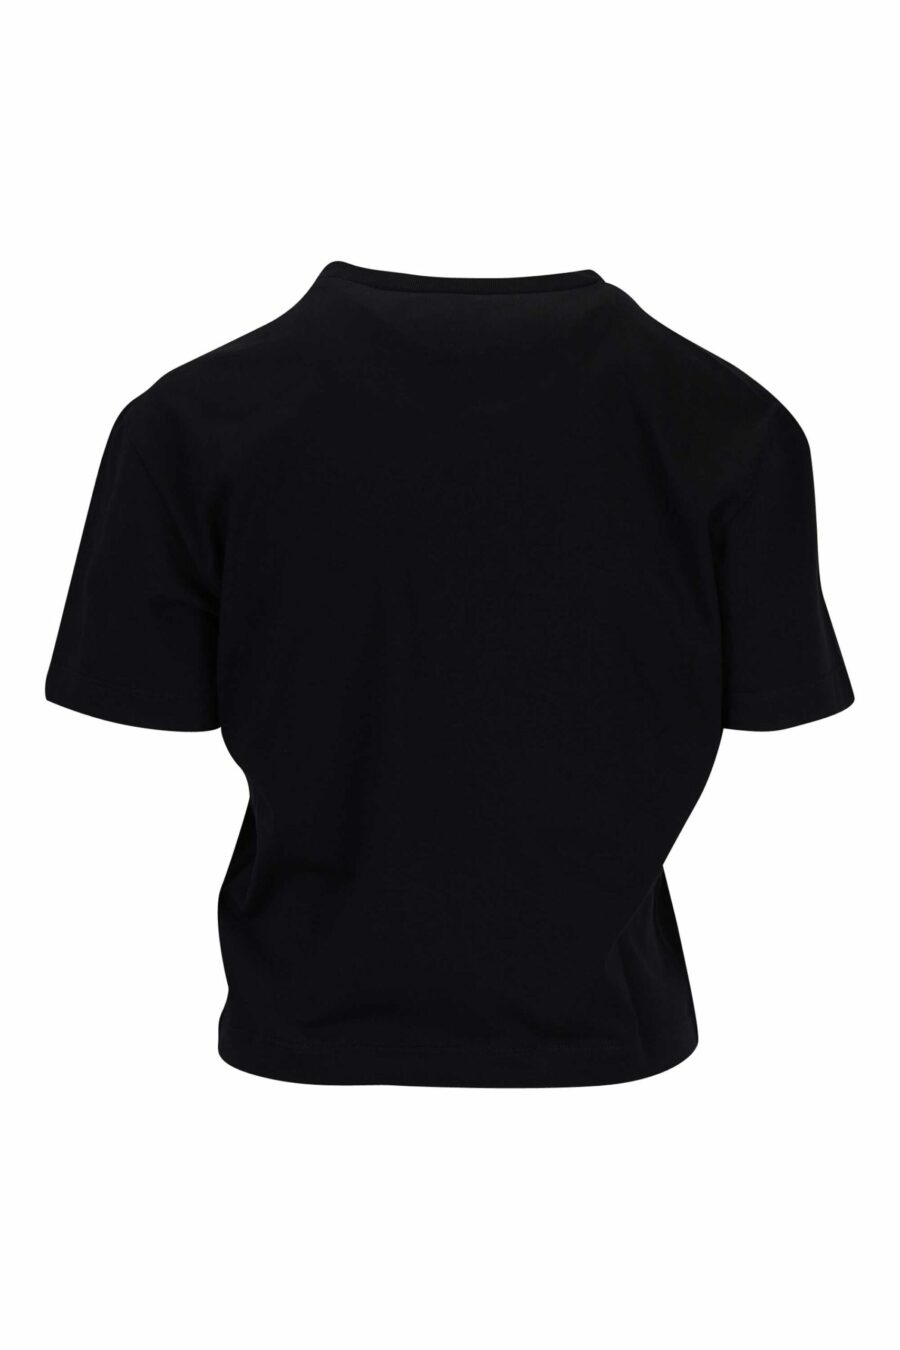 T-shirt noir avec logo en forme de cœur transparent - 8054148332044 1 échelle